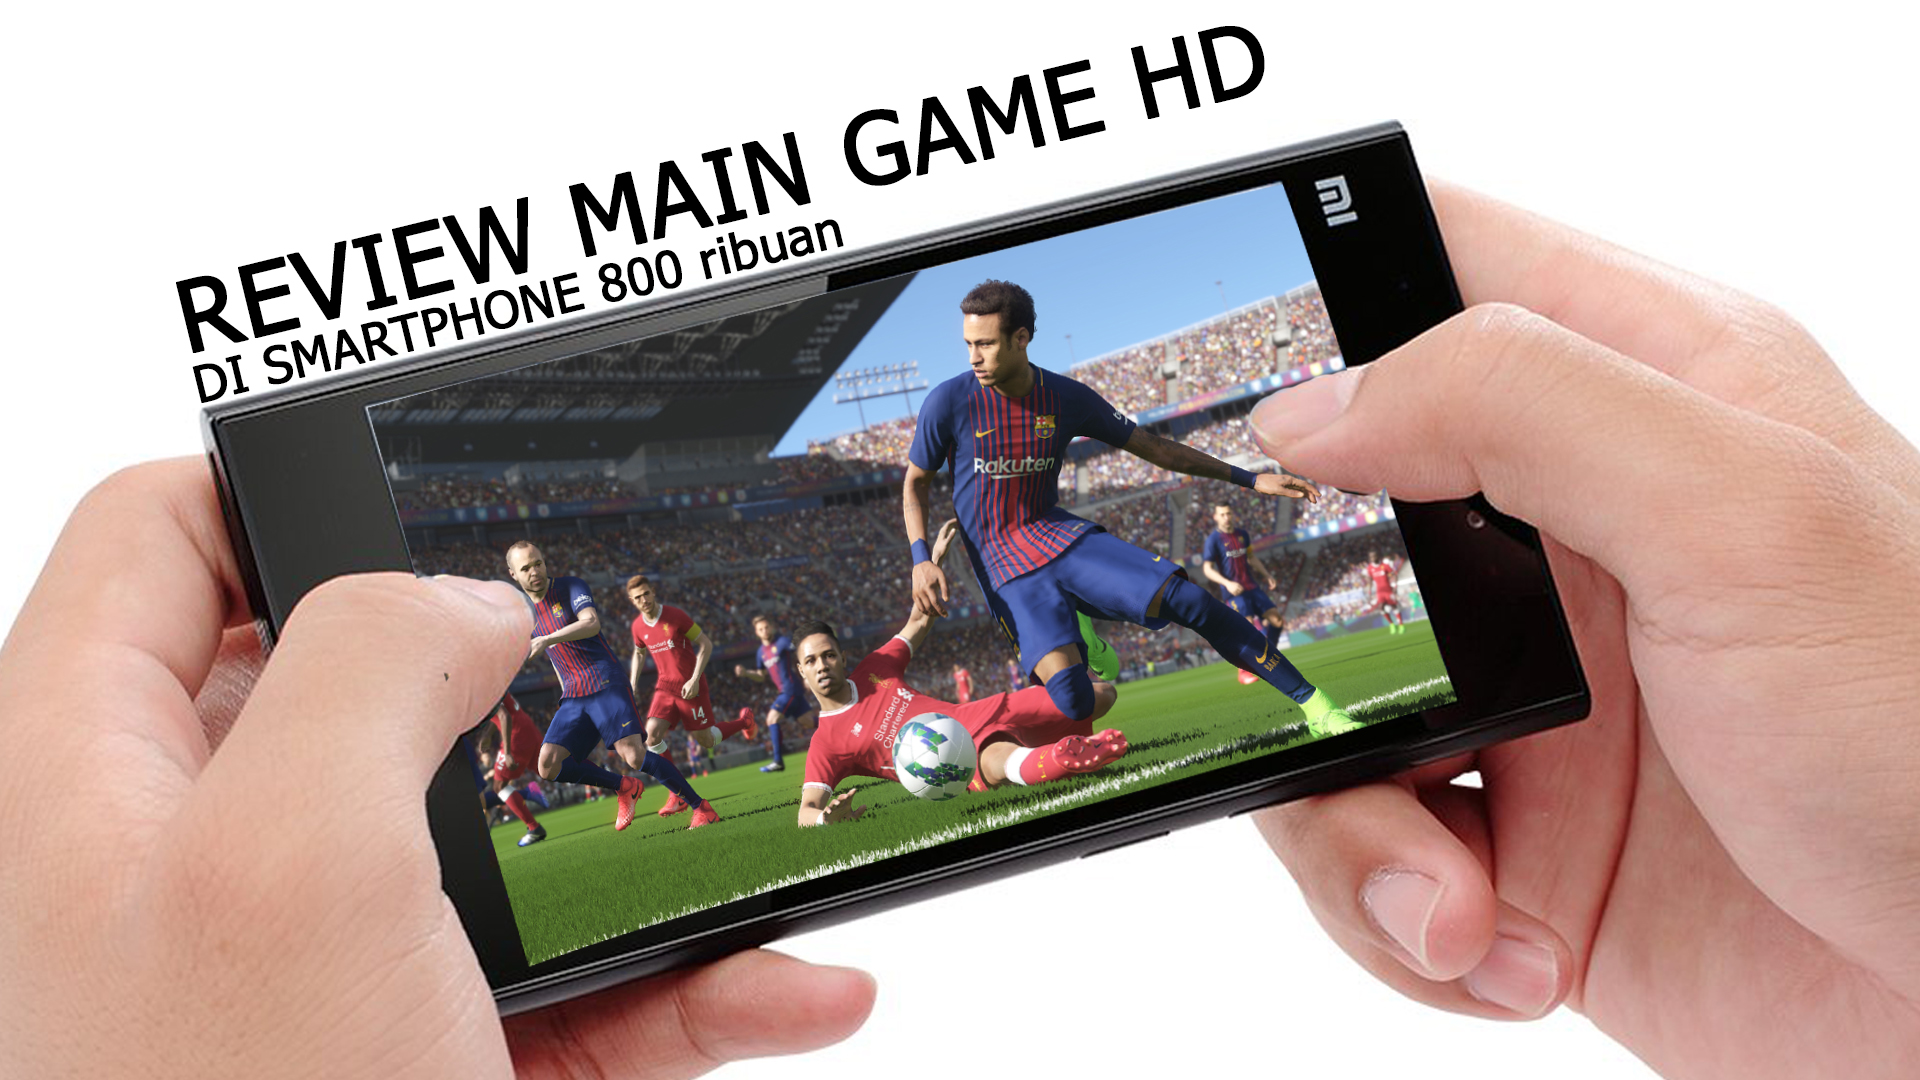 review main game hd di smartphone 800 ribuan